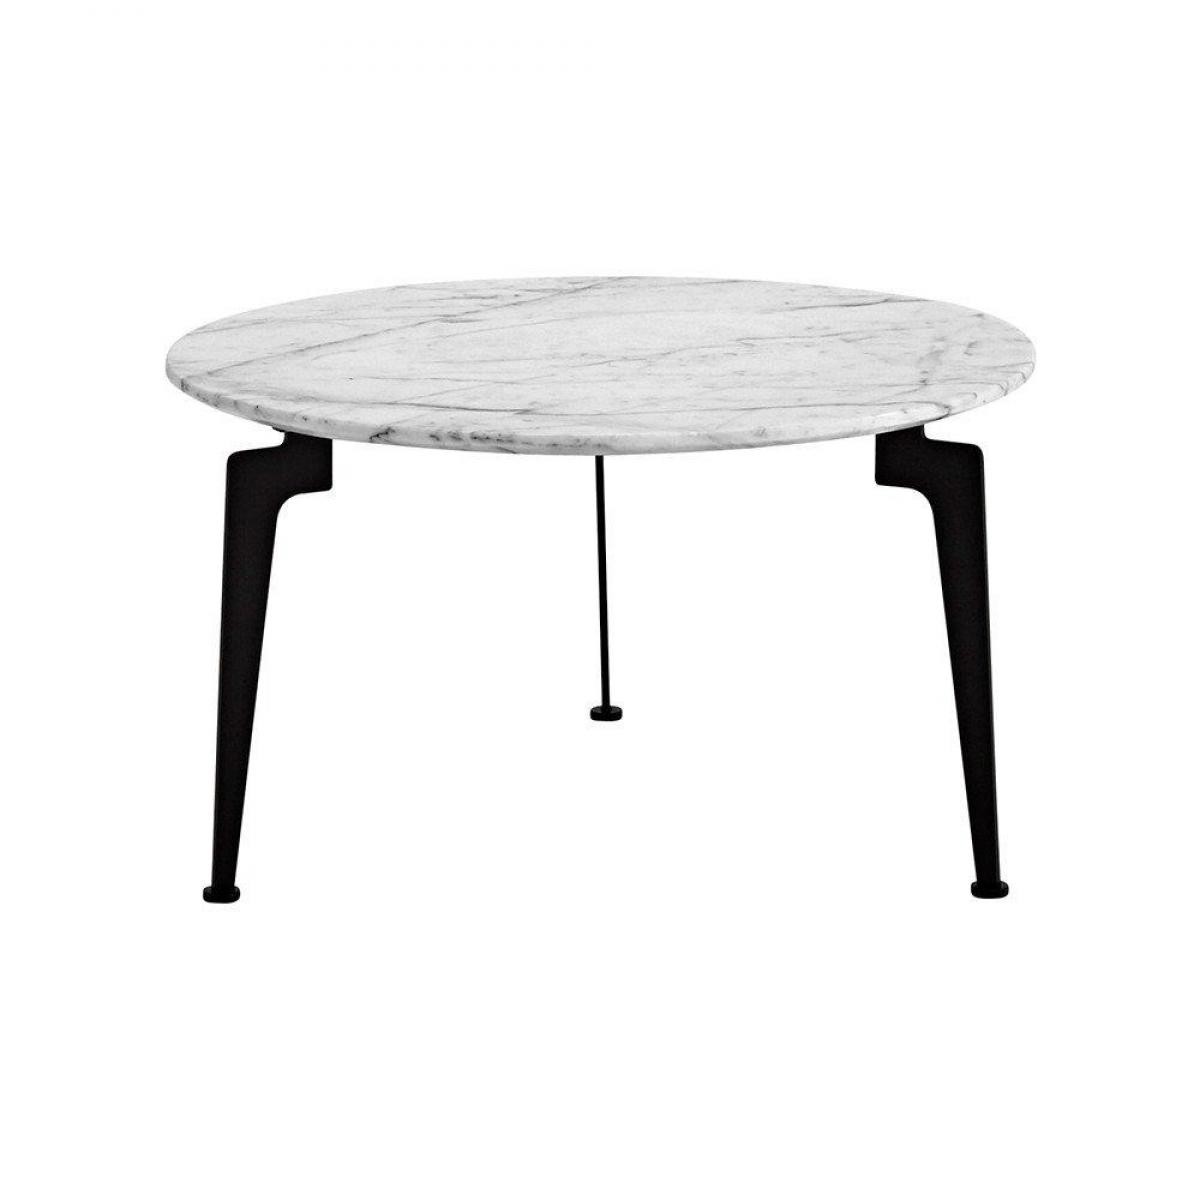 Inside 75 - INNOVATION LIVING Table basse design scandinave LASER taille L plateau en marbre - Tables à manger